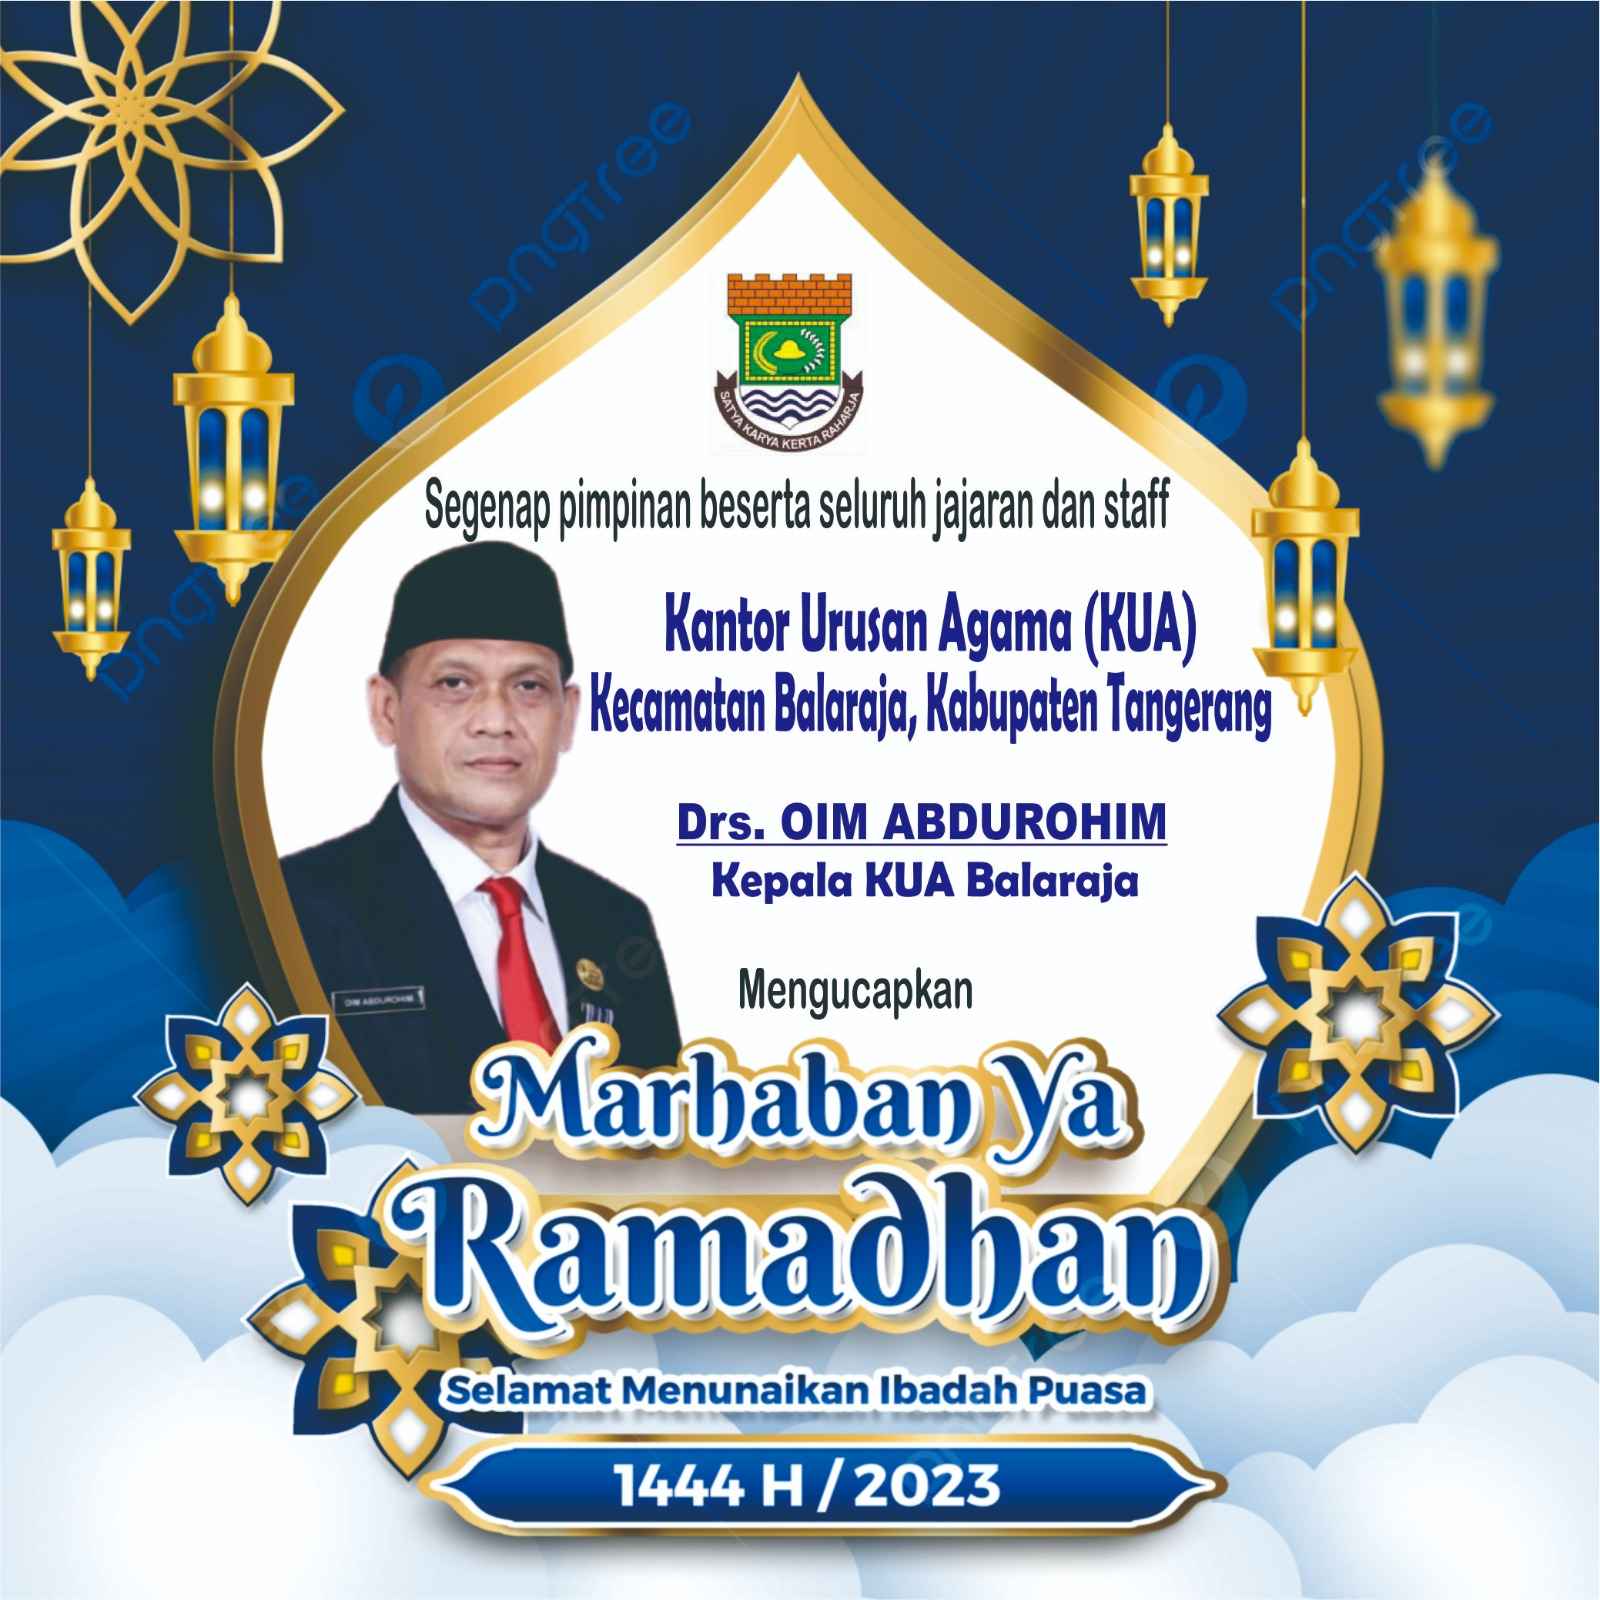 Kantor Urusan Agama ( KUA ) Kecamatan Balaraja, Kabupaten Tangerang Mengucapkan : Marhaban Ya Romadhon 1444 H / 2023